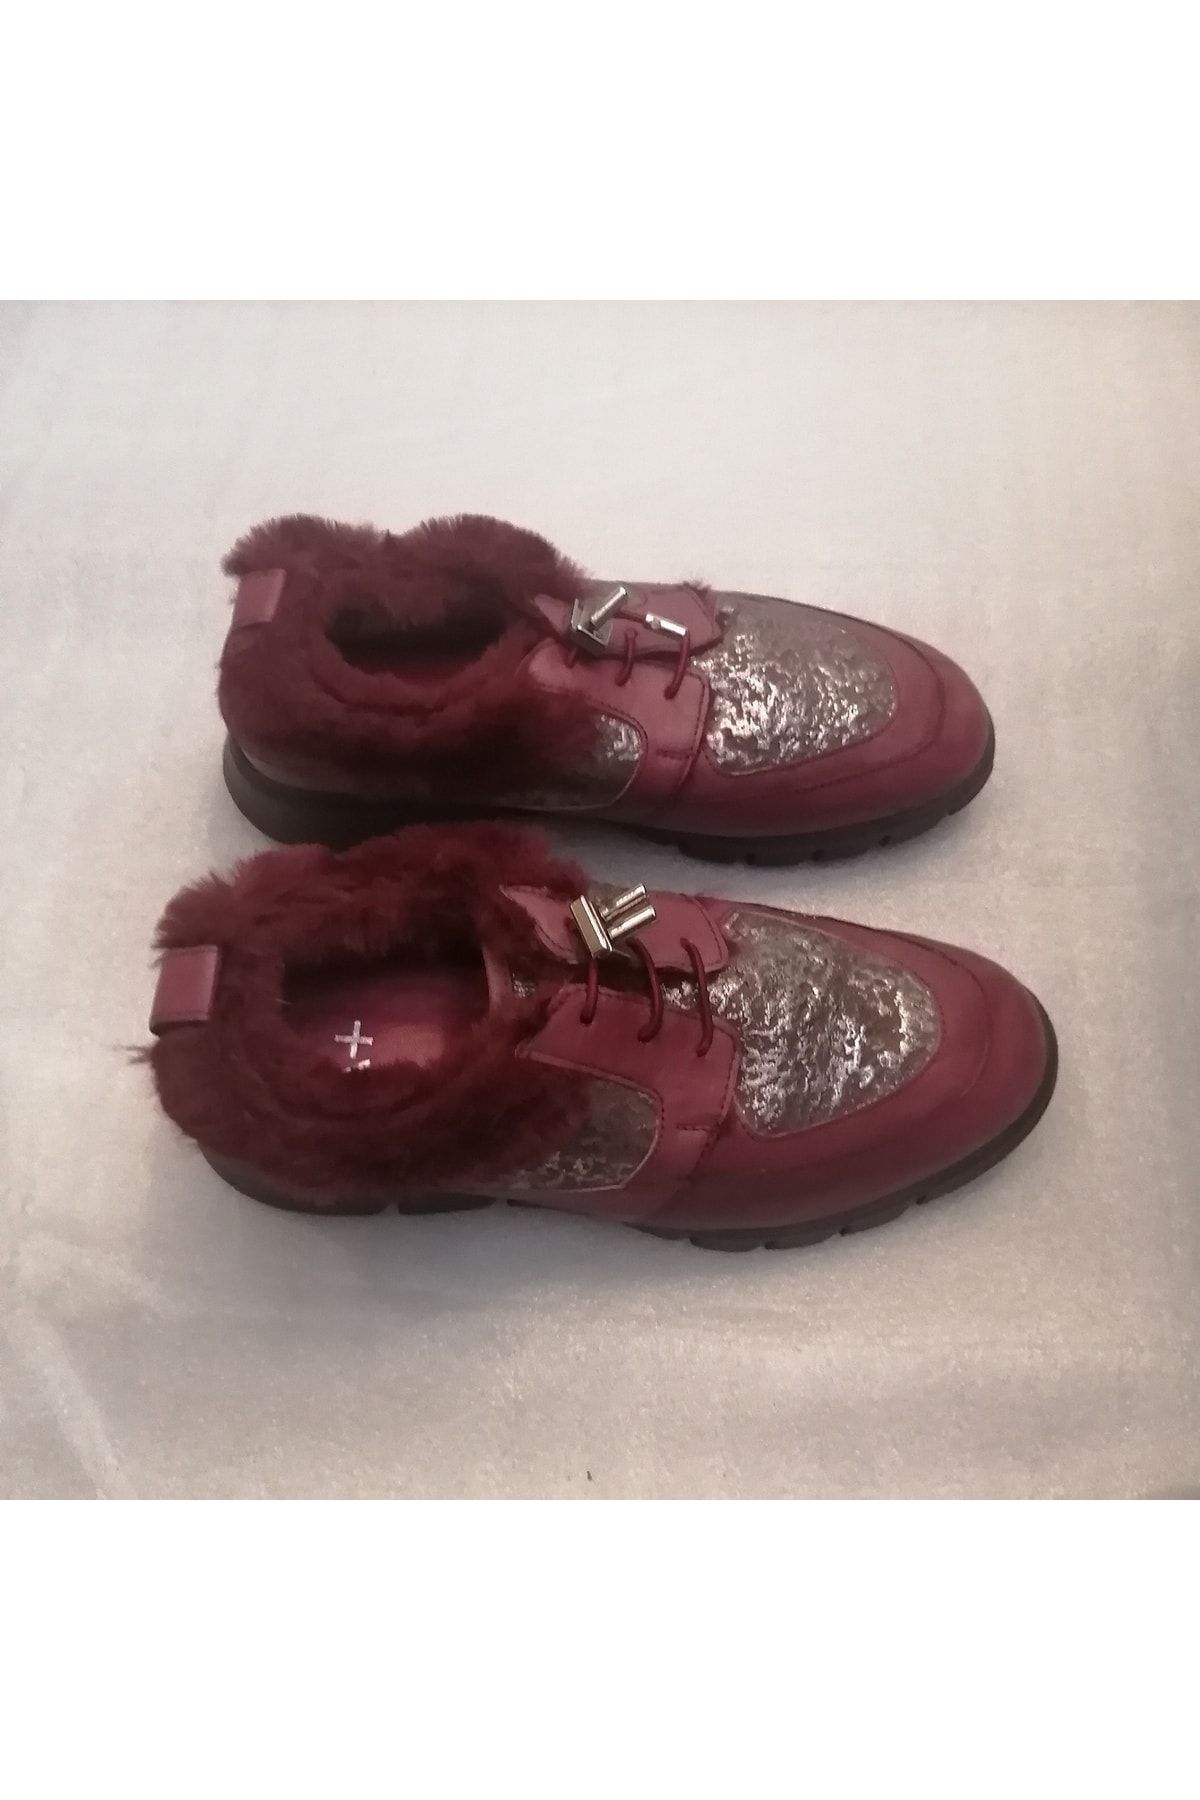 Sail Lakers Kadın Hakiki Deri Bordo Antik Gümüş Baskı Kürklü Eva Tabanlı Yumuşak Bağcıklı Ayakkabı